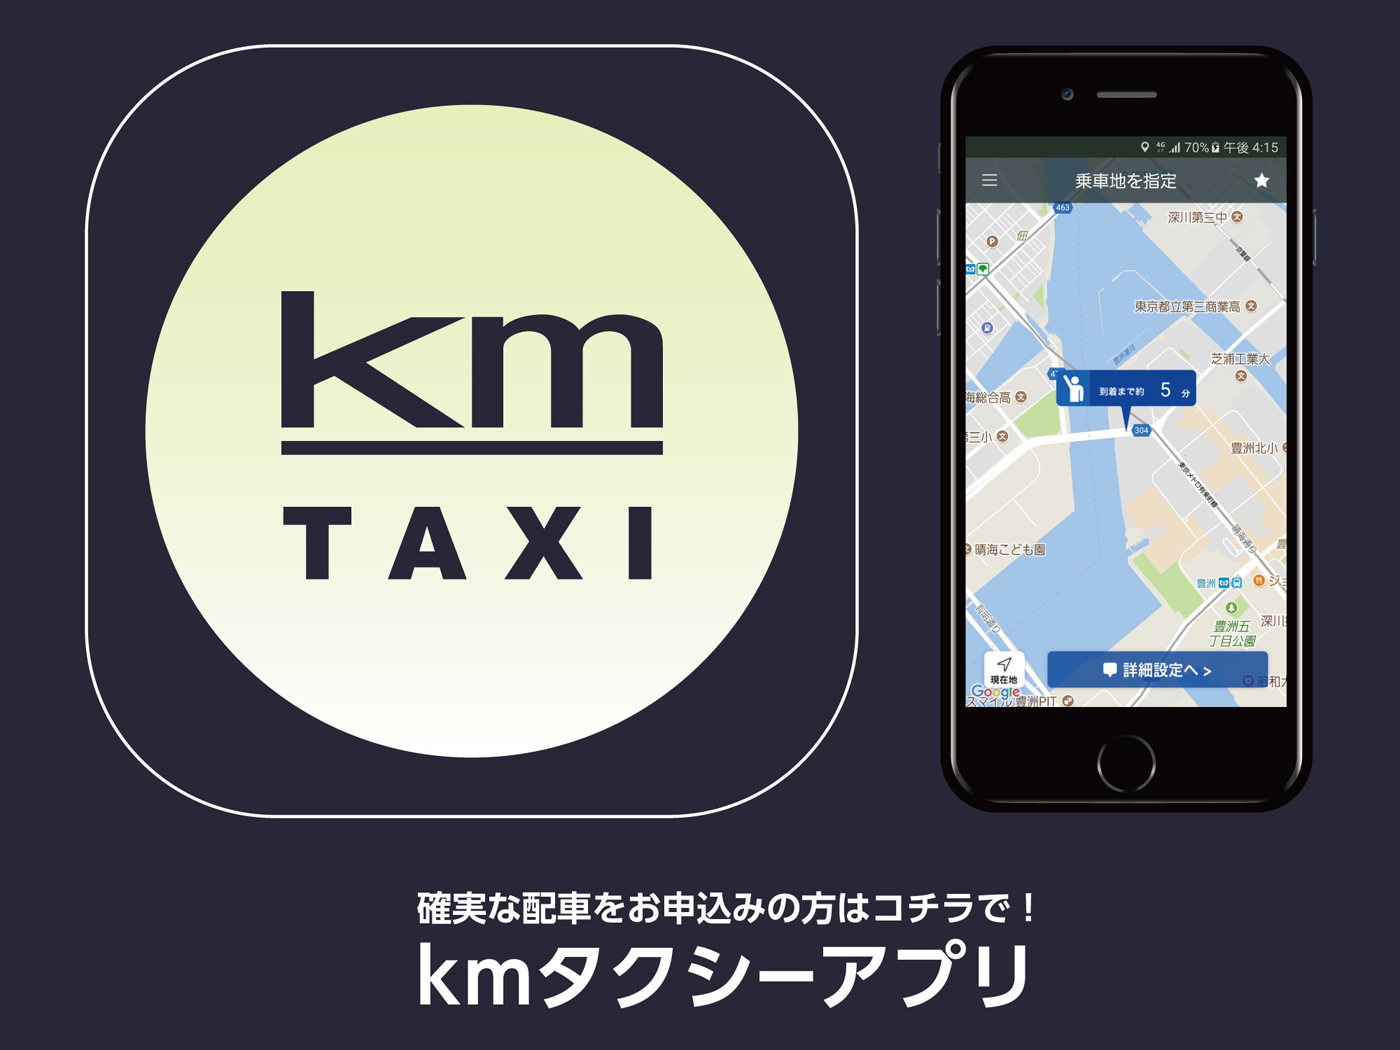 「フルクル」で見て近くに空車タクシーがいなかったら、確実に配車される姉妹アプリ「kmタクシーアプリ」をご利用くださいというビジネスモデル。もちろん、他社の配車アプリを使うのも自由です